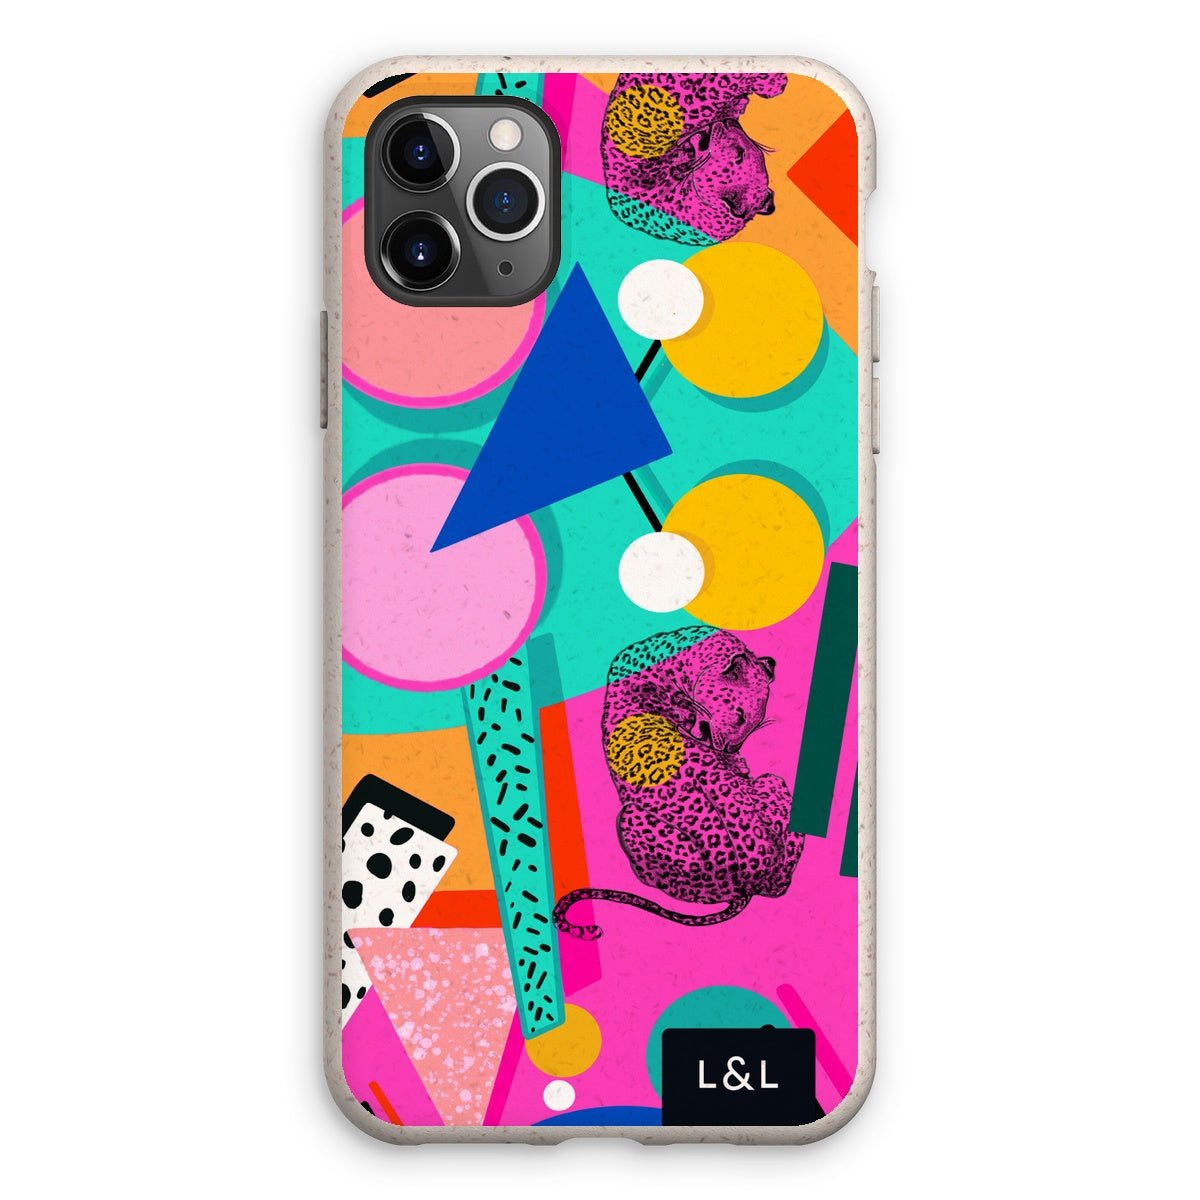 L&L Chic Eco Phone Case - Loam & Lore